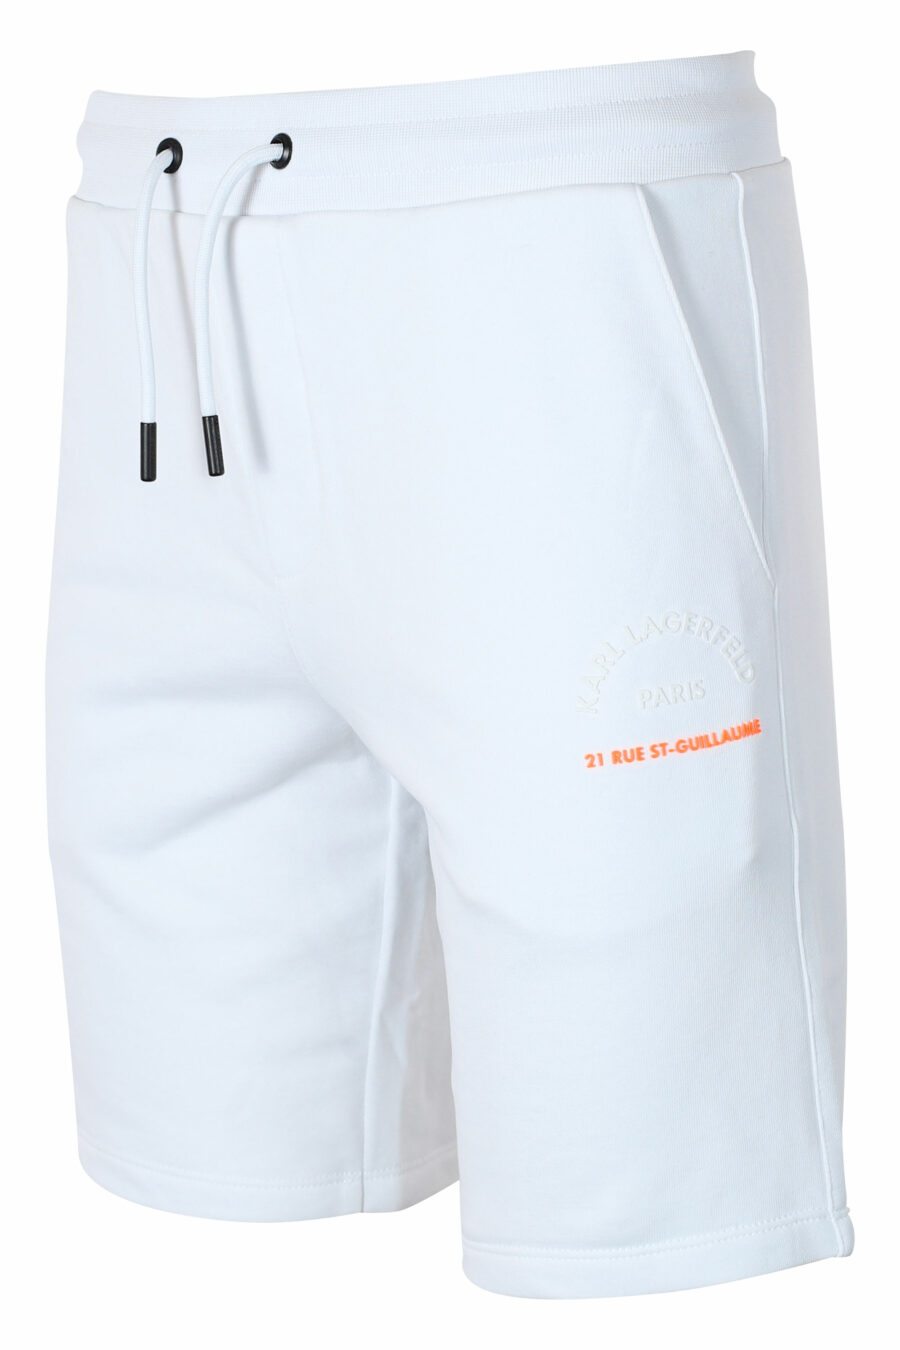 Bas de survêtement blanc court avec minilogue orange "rue st guillaume" - IMG 9560